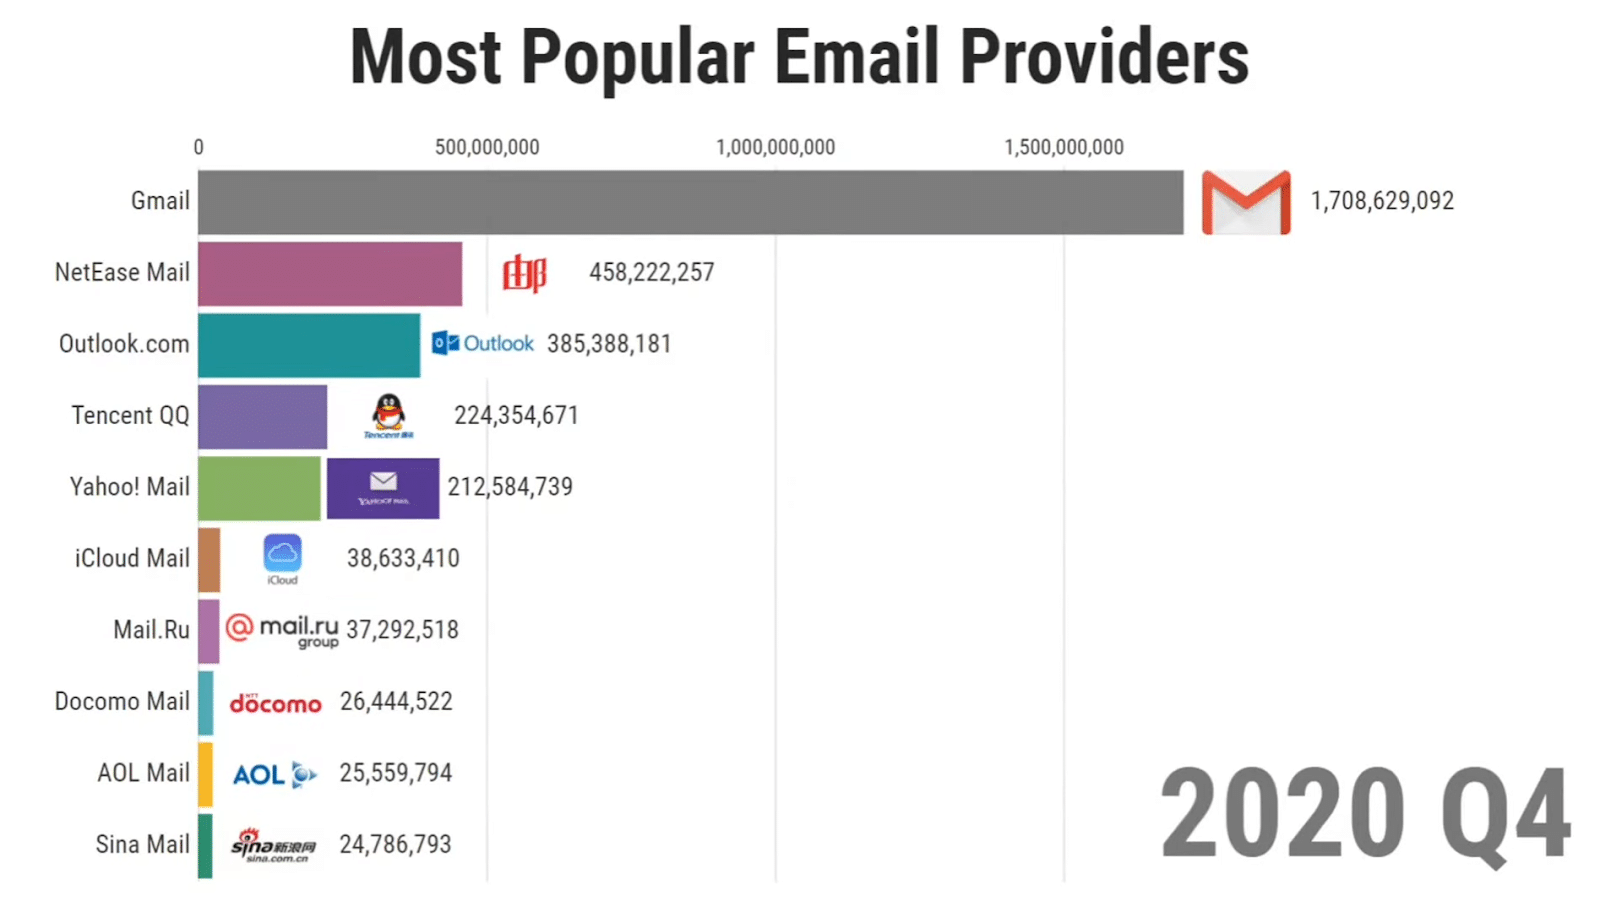 Grafico sui provider di posta elettronica più popolari, dati 2020 q4: in testa c’è Gmail con più di 1,7 miliardi di utenti; seguono NetEase Mail con 458 milioni e Outlook con 385 milioni